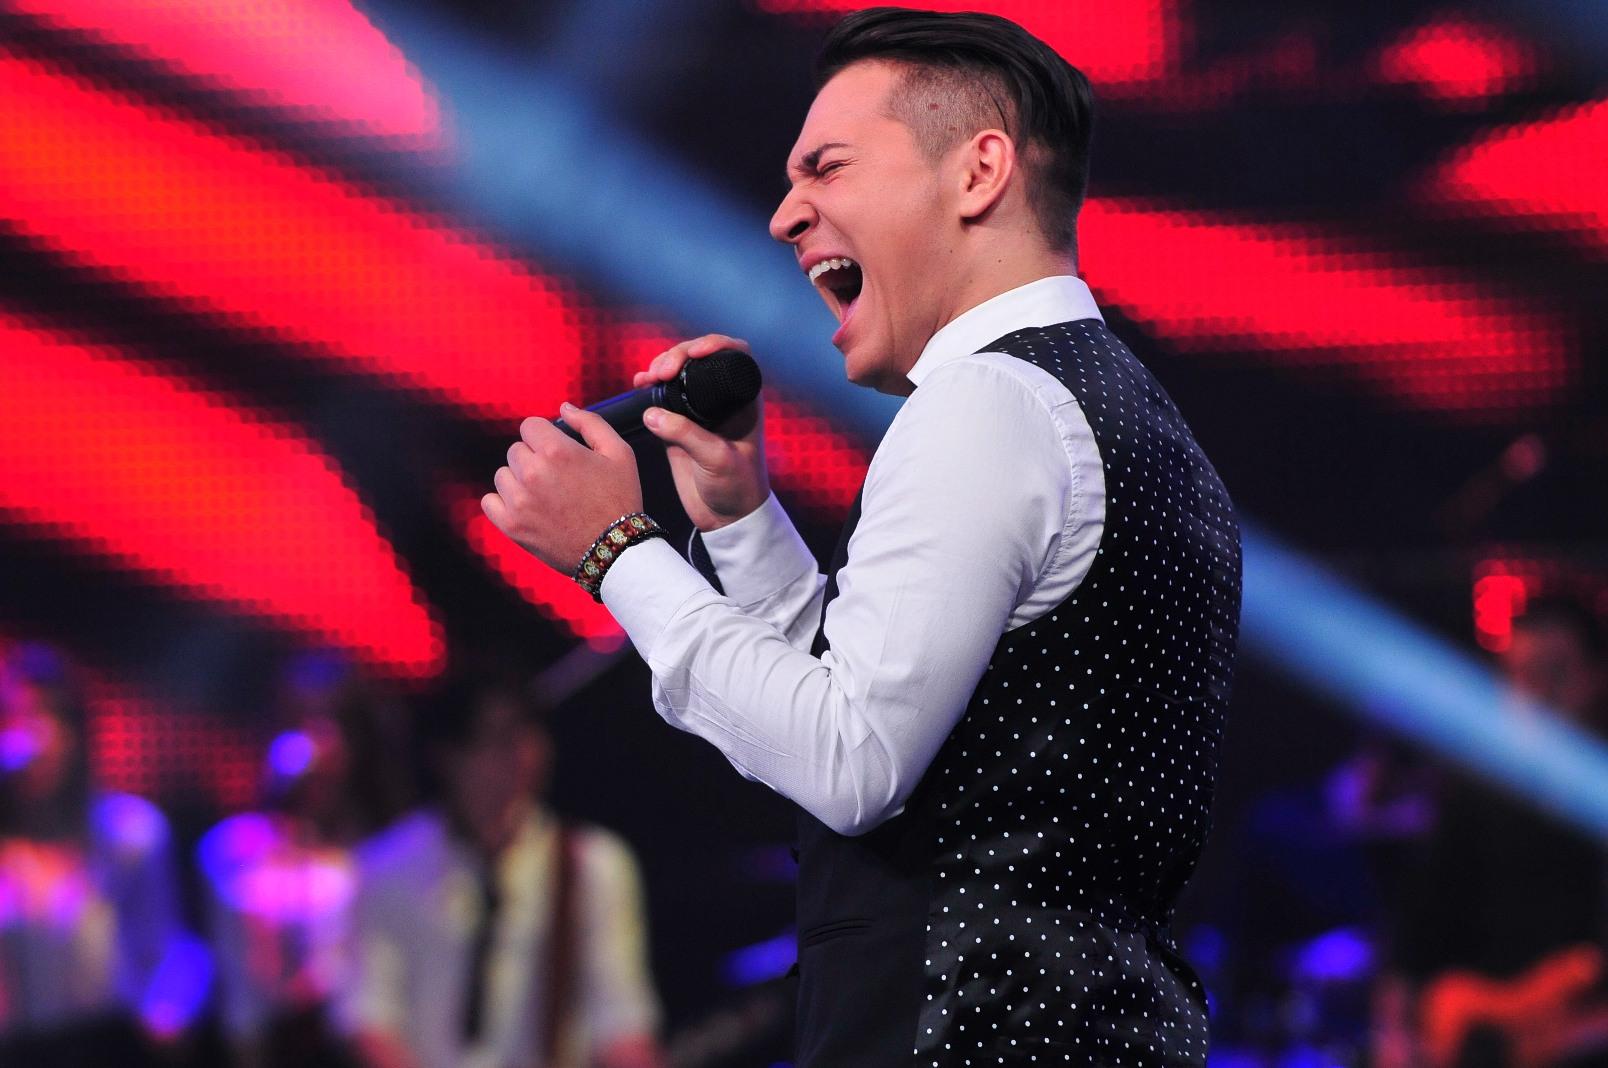 Câștigătorul celui de-al cincilea sezon X Factor de la Antena 1,  Florin Răduță, în concert cu Nicoleta Nucă